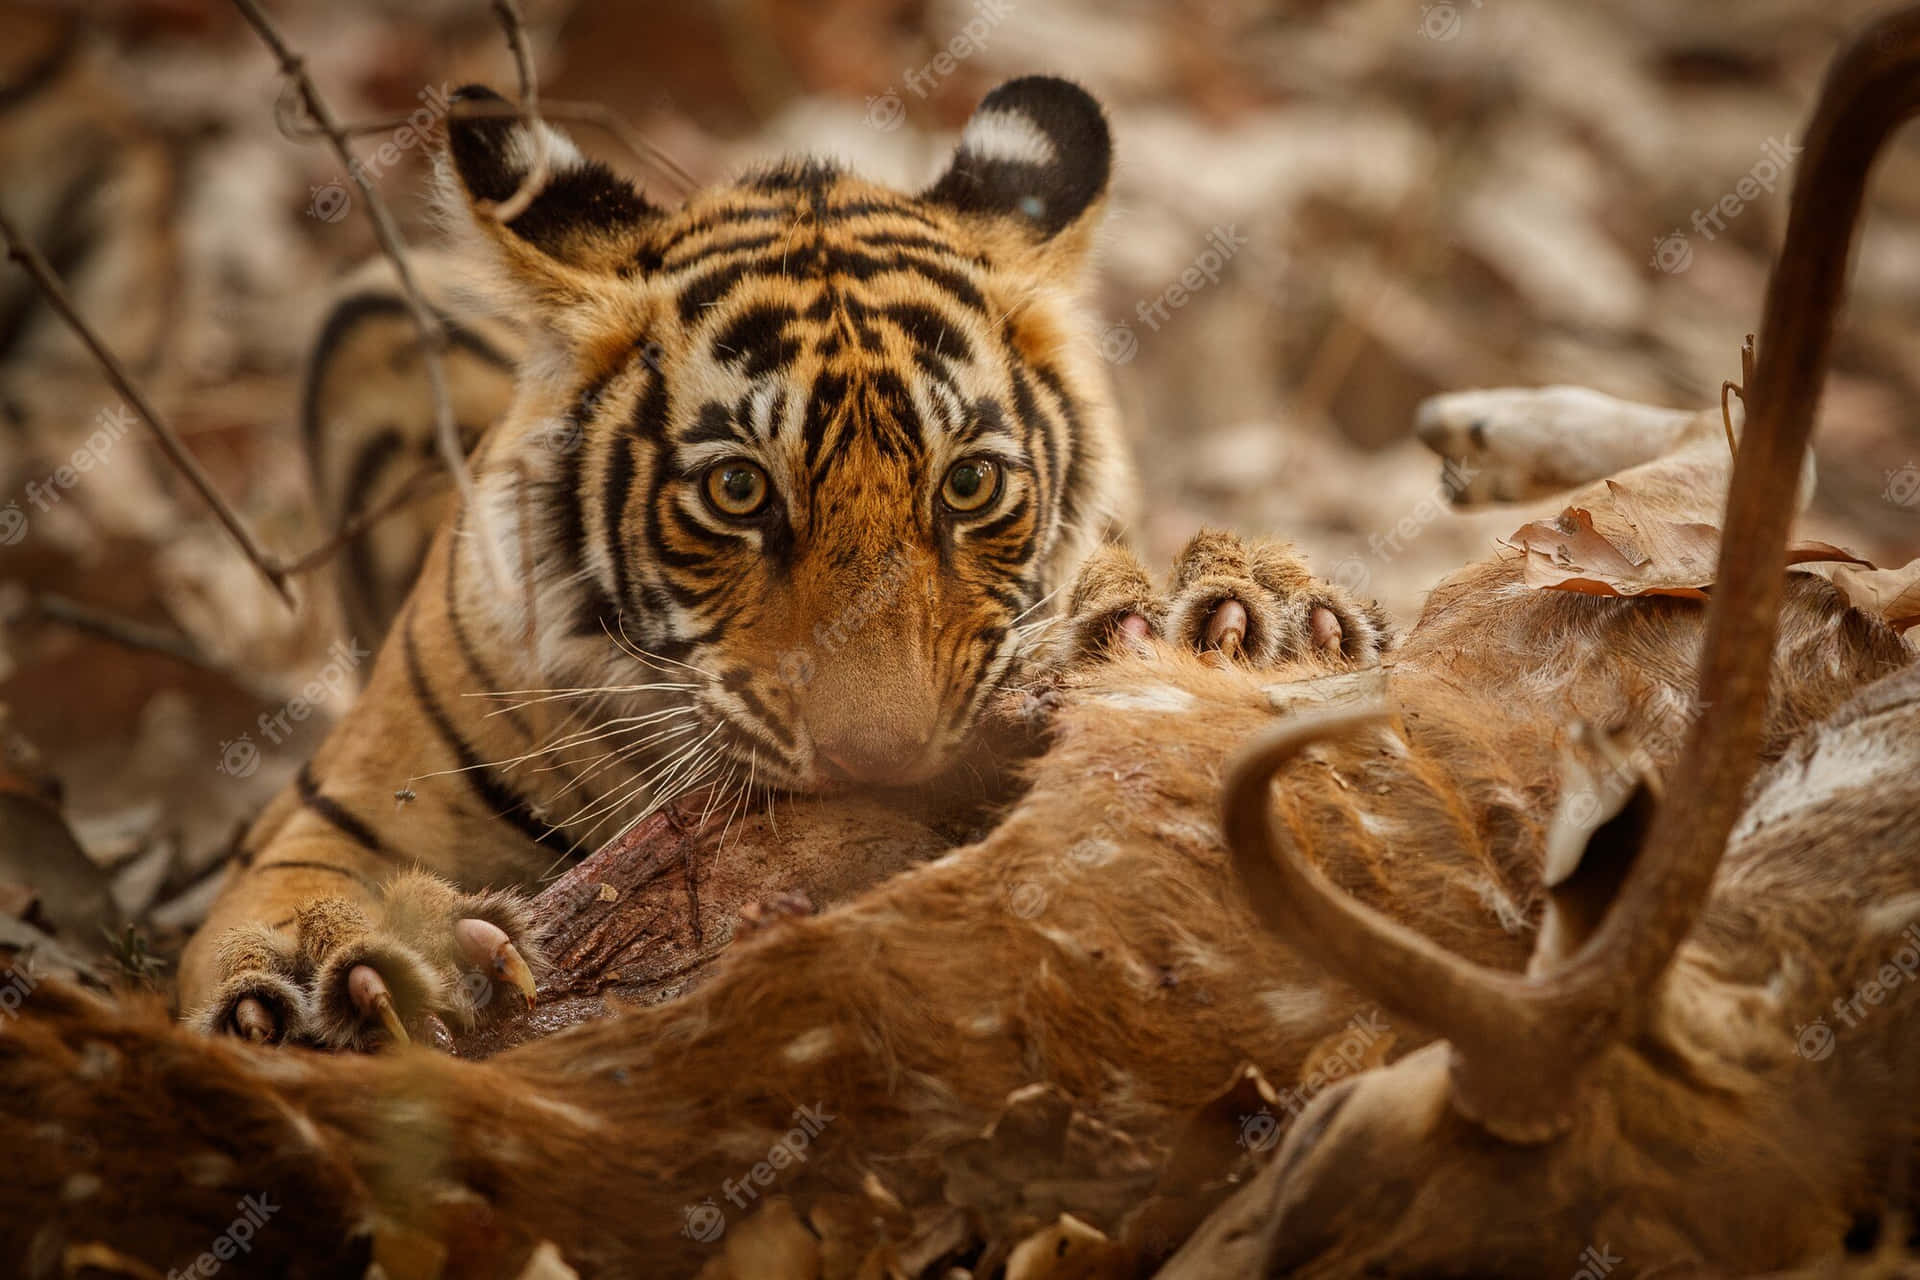 Beautiful Bengal Tiger in its Natural Habitat